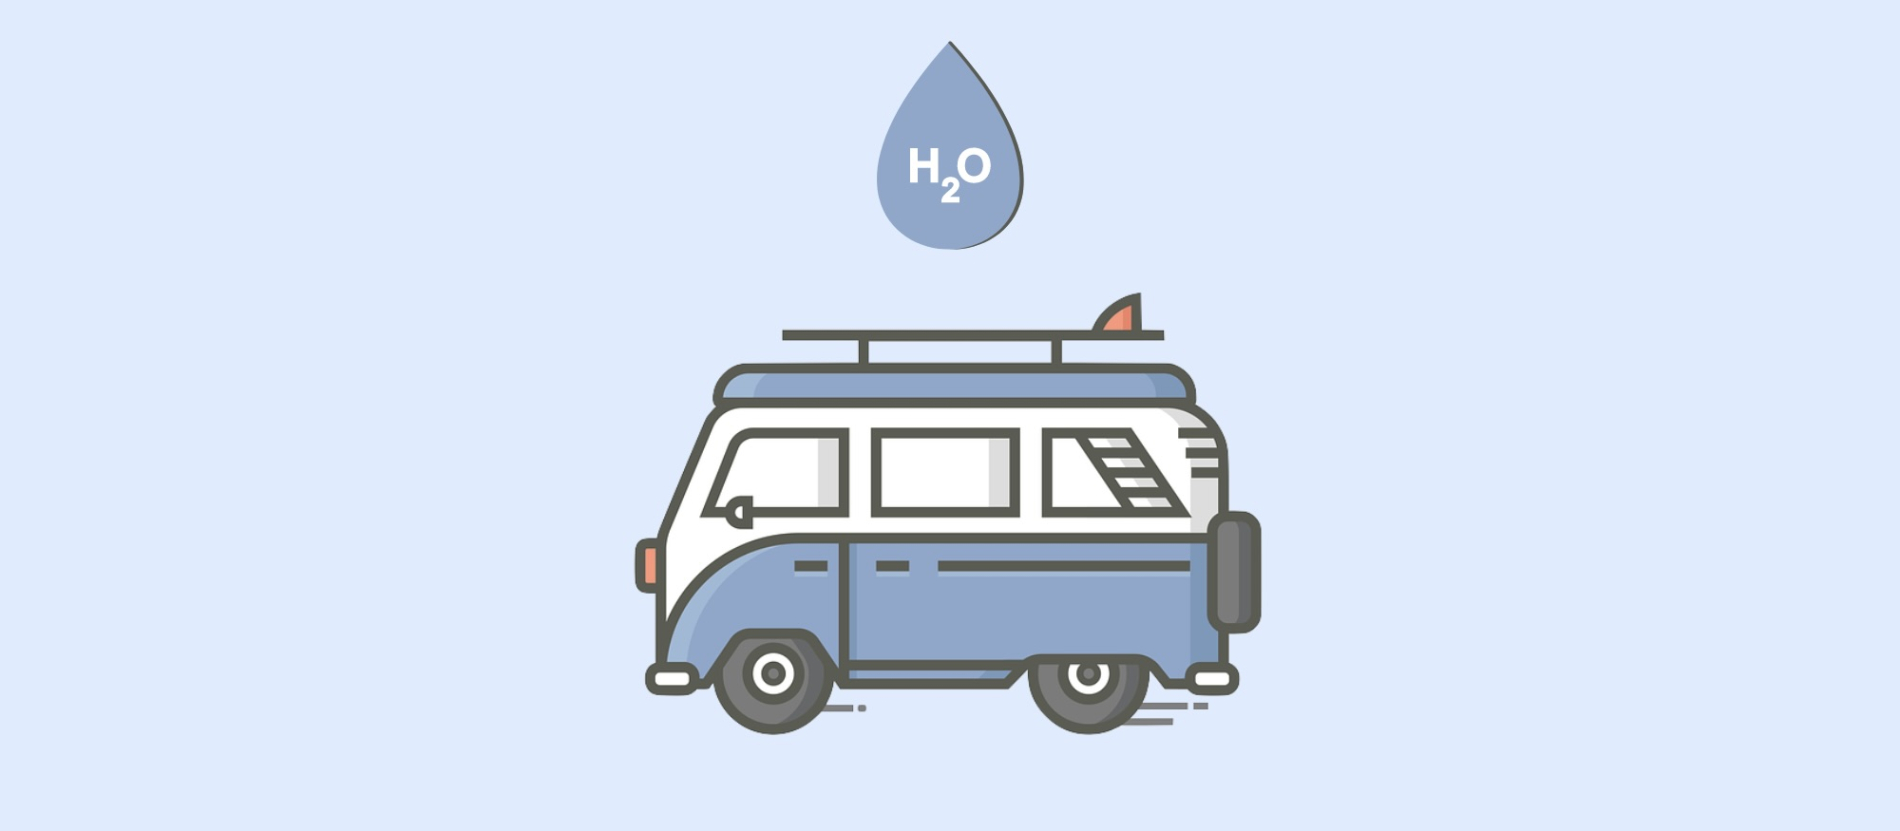 Cartoon droplet of water overtop of a blue van.